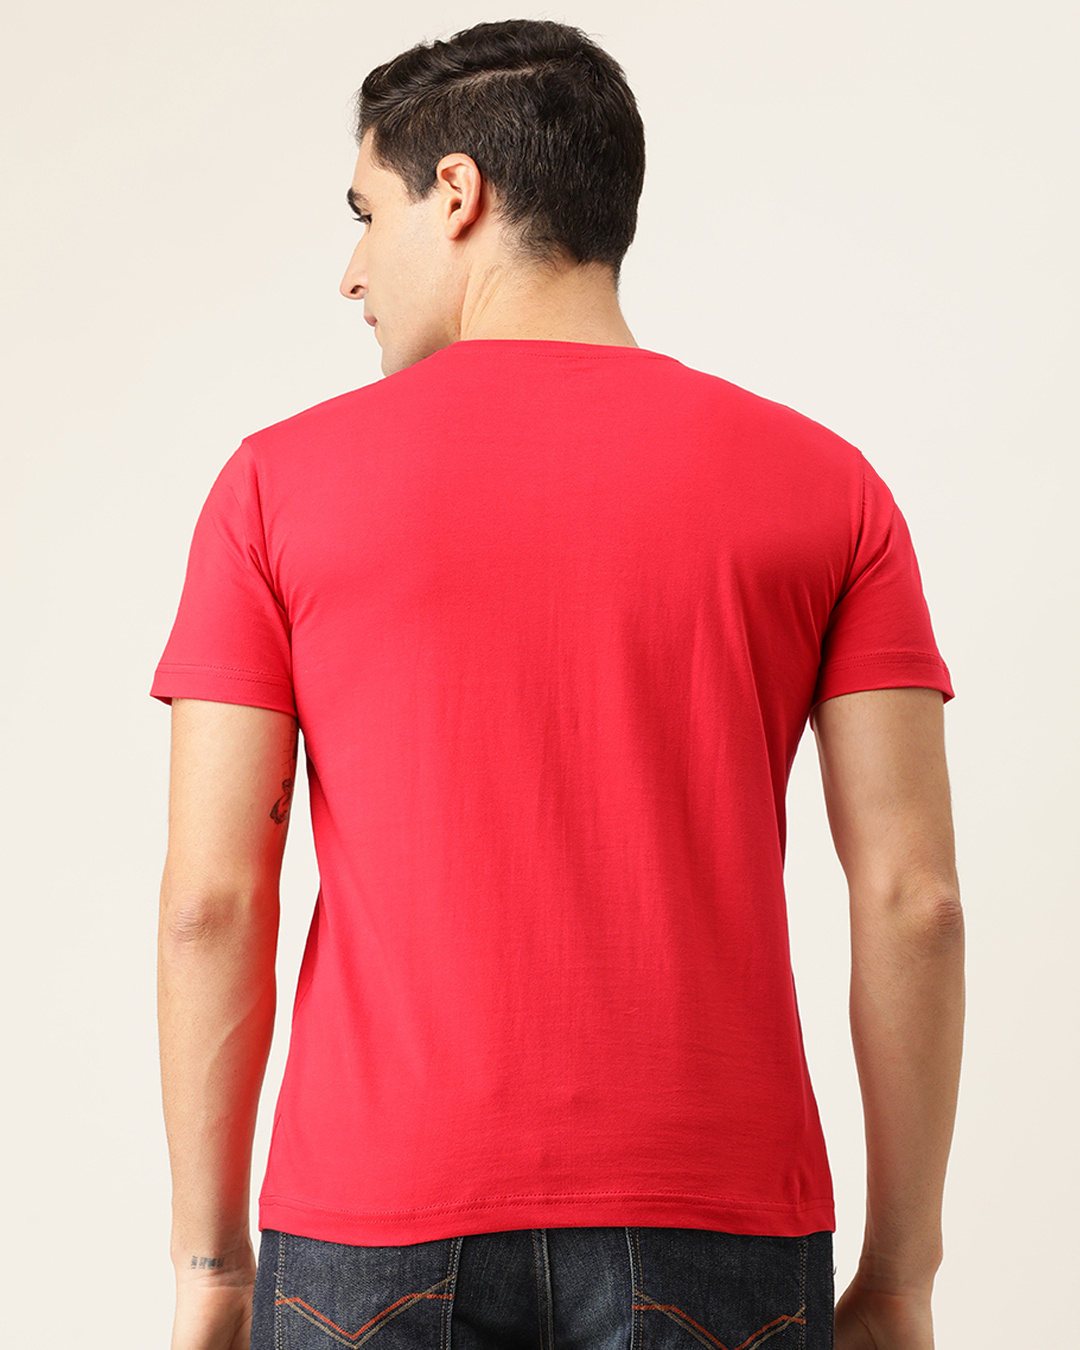 Shop Travel Eat Discover Half Sleeve T Shirt For Men-Back